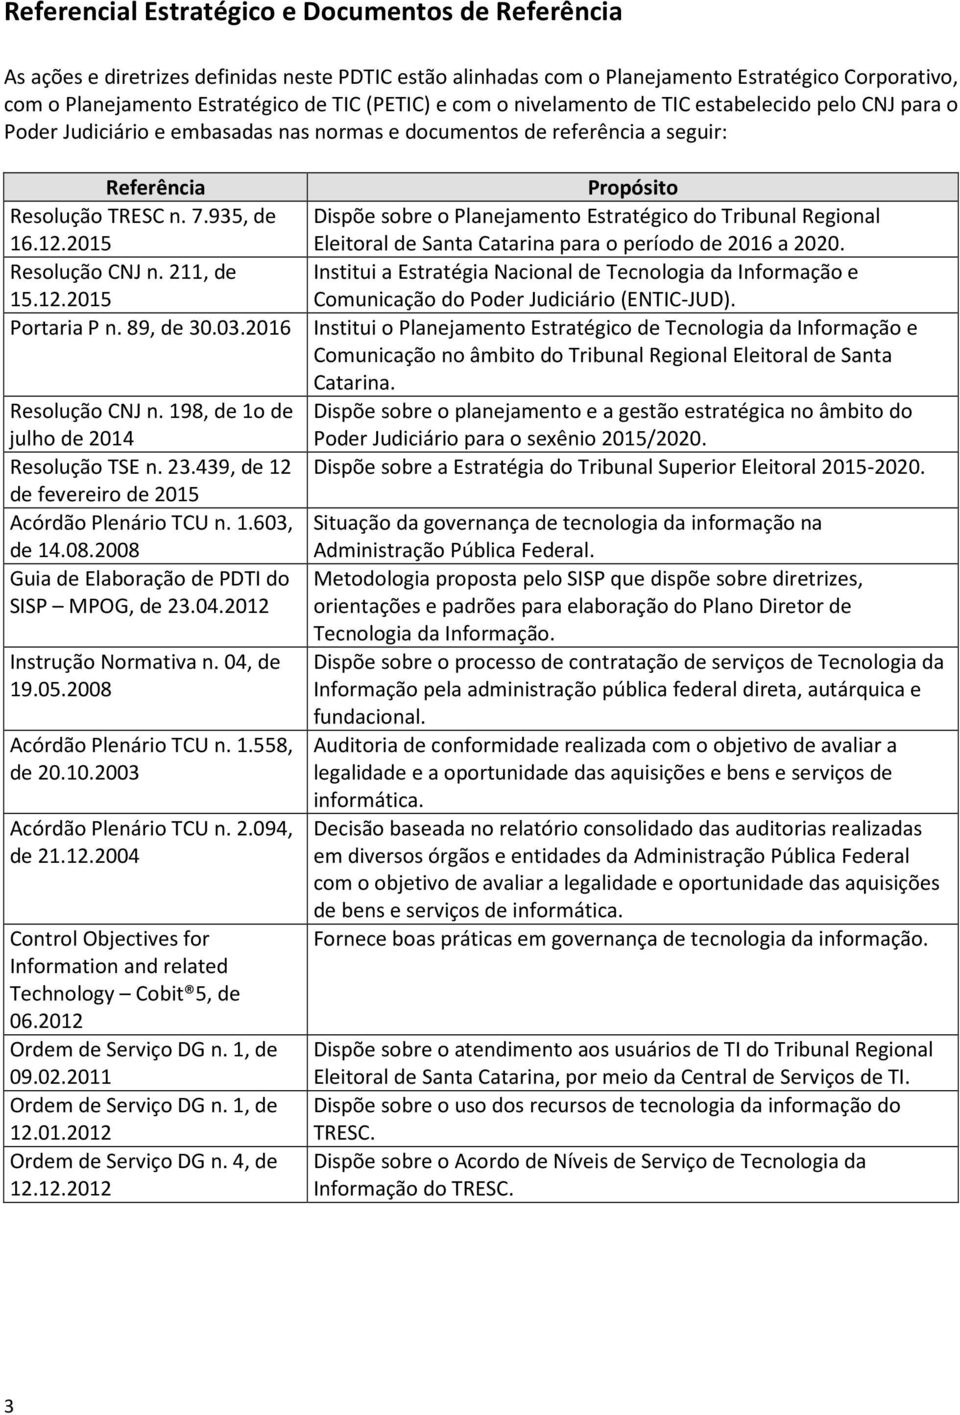 935, de Dispõe sobre o Planejamento Estratégico do Tribunal Regional 16.12.2015 Eleitoral de Santa Catarina para o período de 2016 a 2020. Resolução CNJ n.